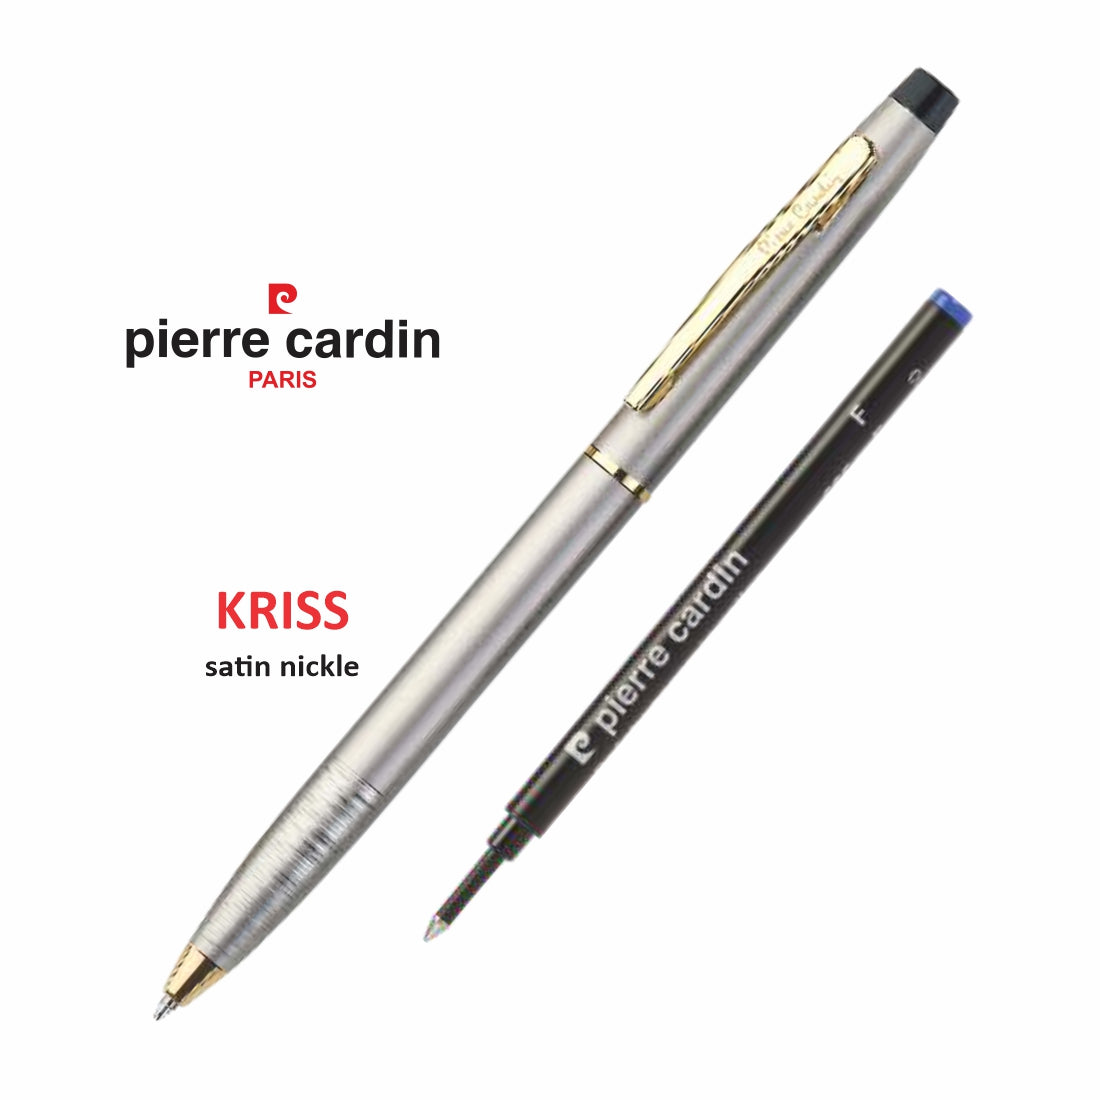 Pierre Cardin Kriss Satin Nickle Roller Pen